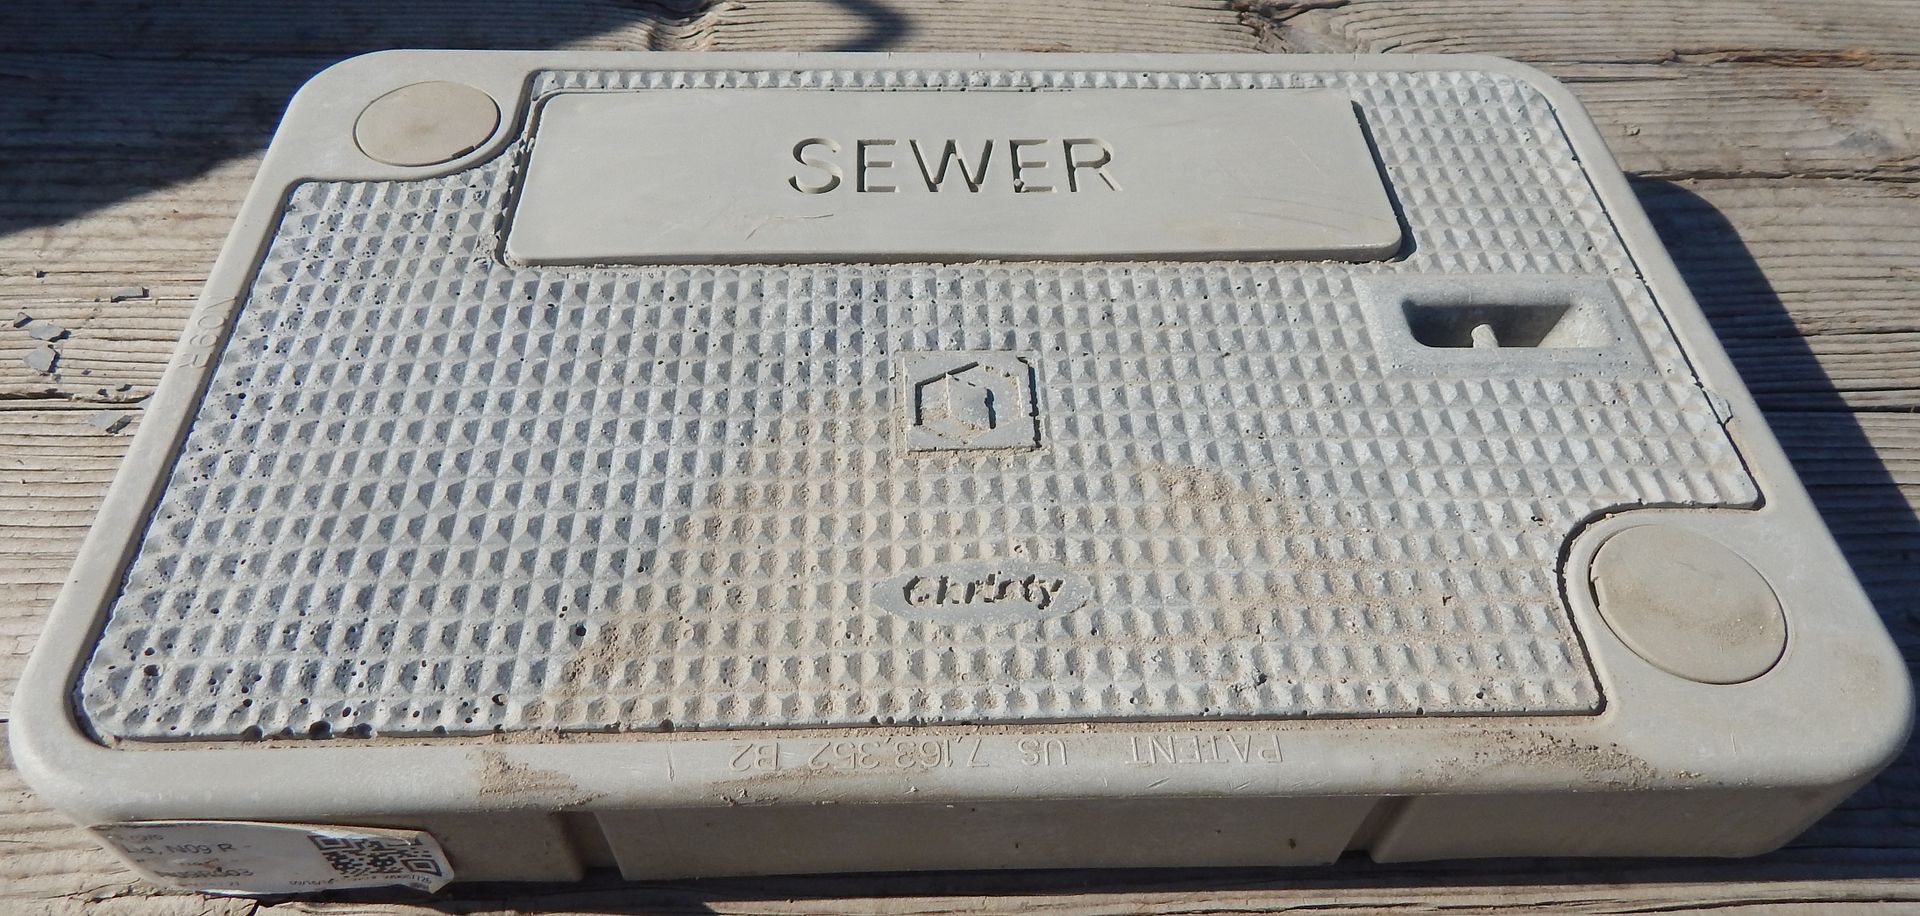 B9D CONC LID- "SEWER"